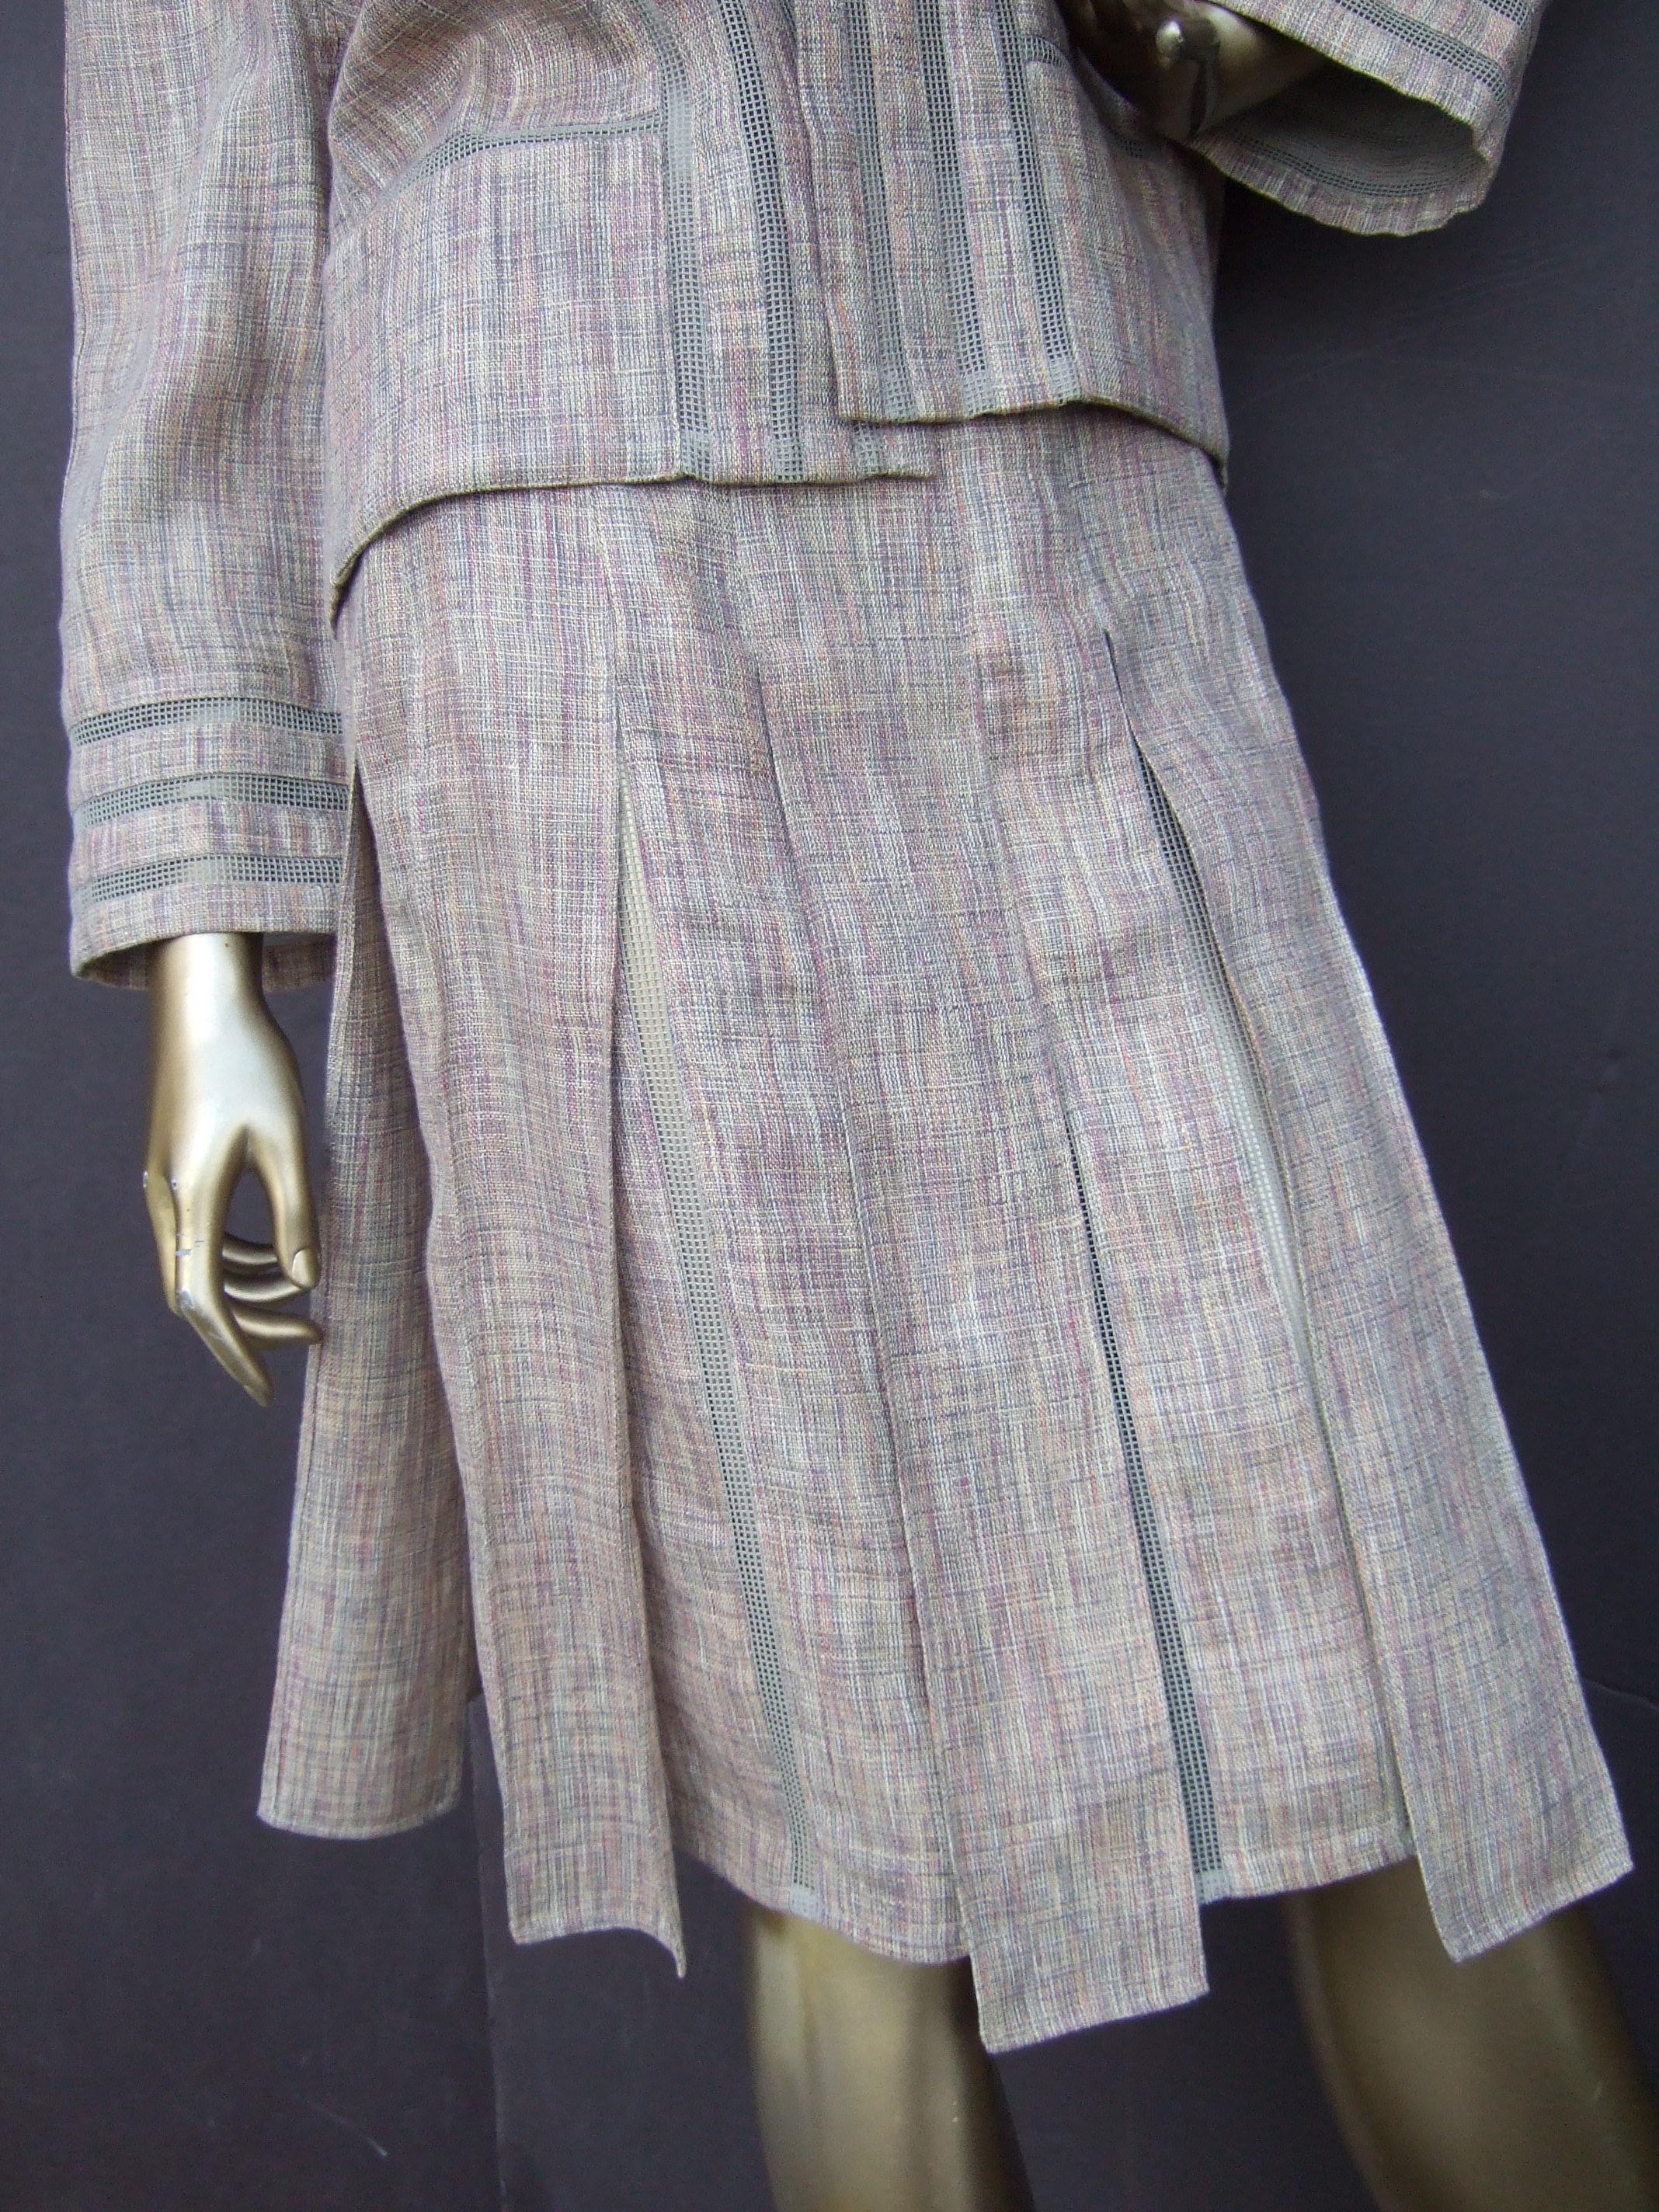 Chanel Chic Beige Linen & Cotton Blend Skirt Suit c 2000 Size 40  For Sale 11